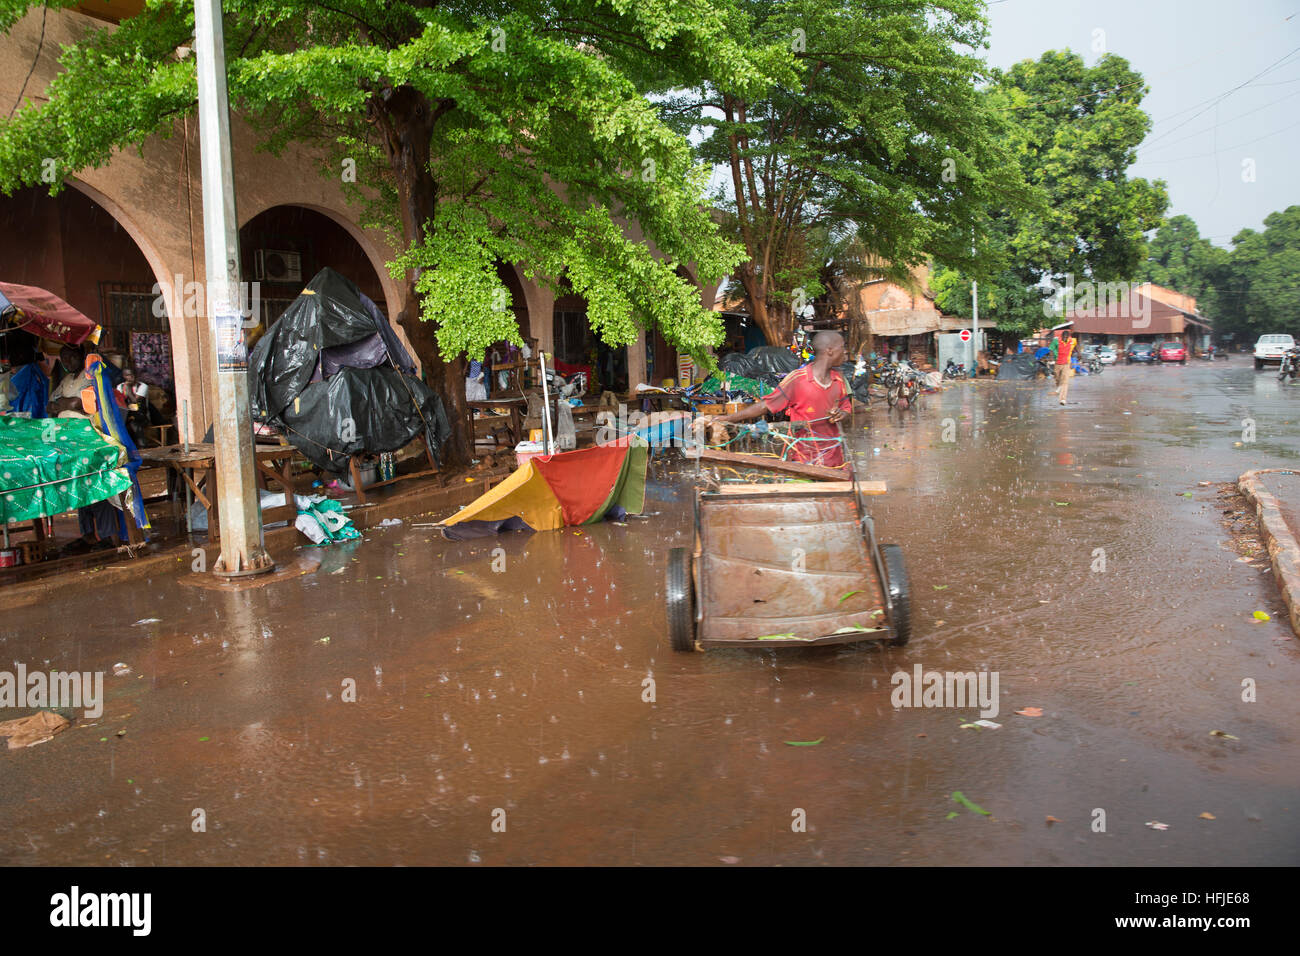 Kankan town, Guinea, 1 Maggio 2015: scene di strada mentre inizio stagione delle piogge cadono nella città. Foto Stock